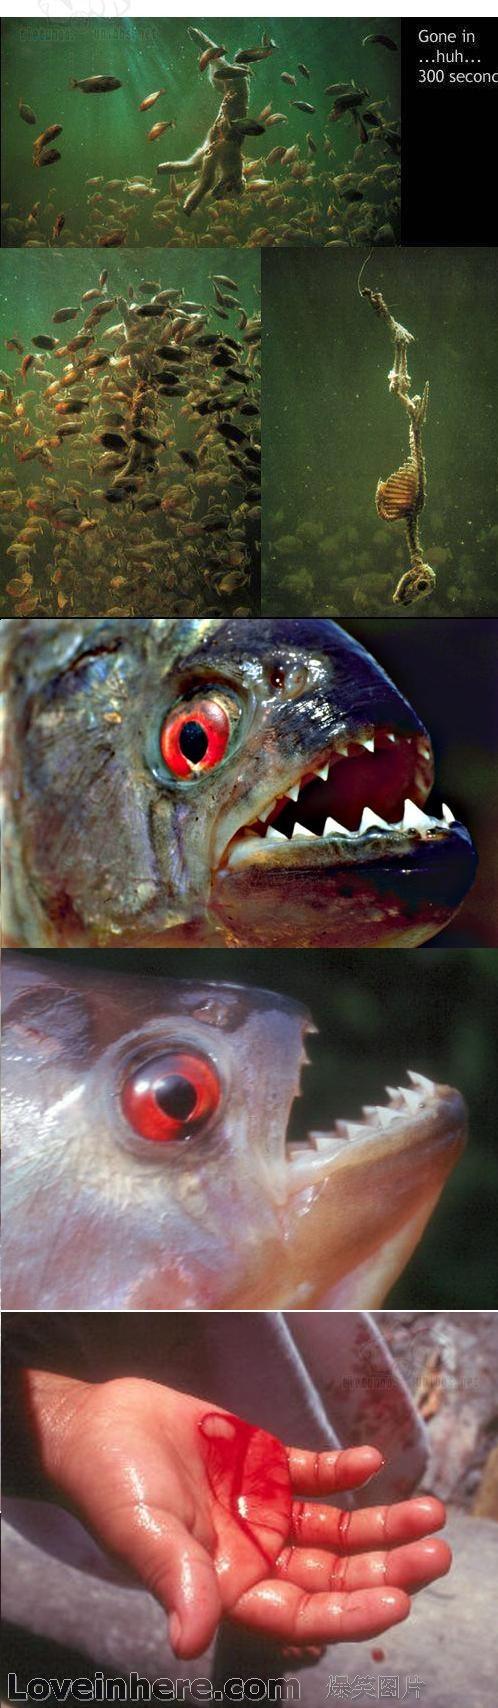 食人鱼可以吃吗有毒吗